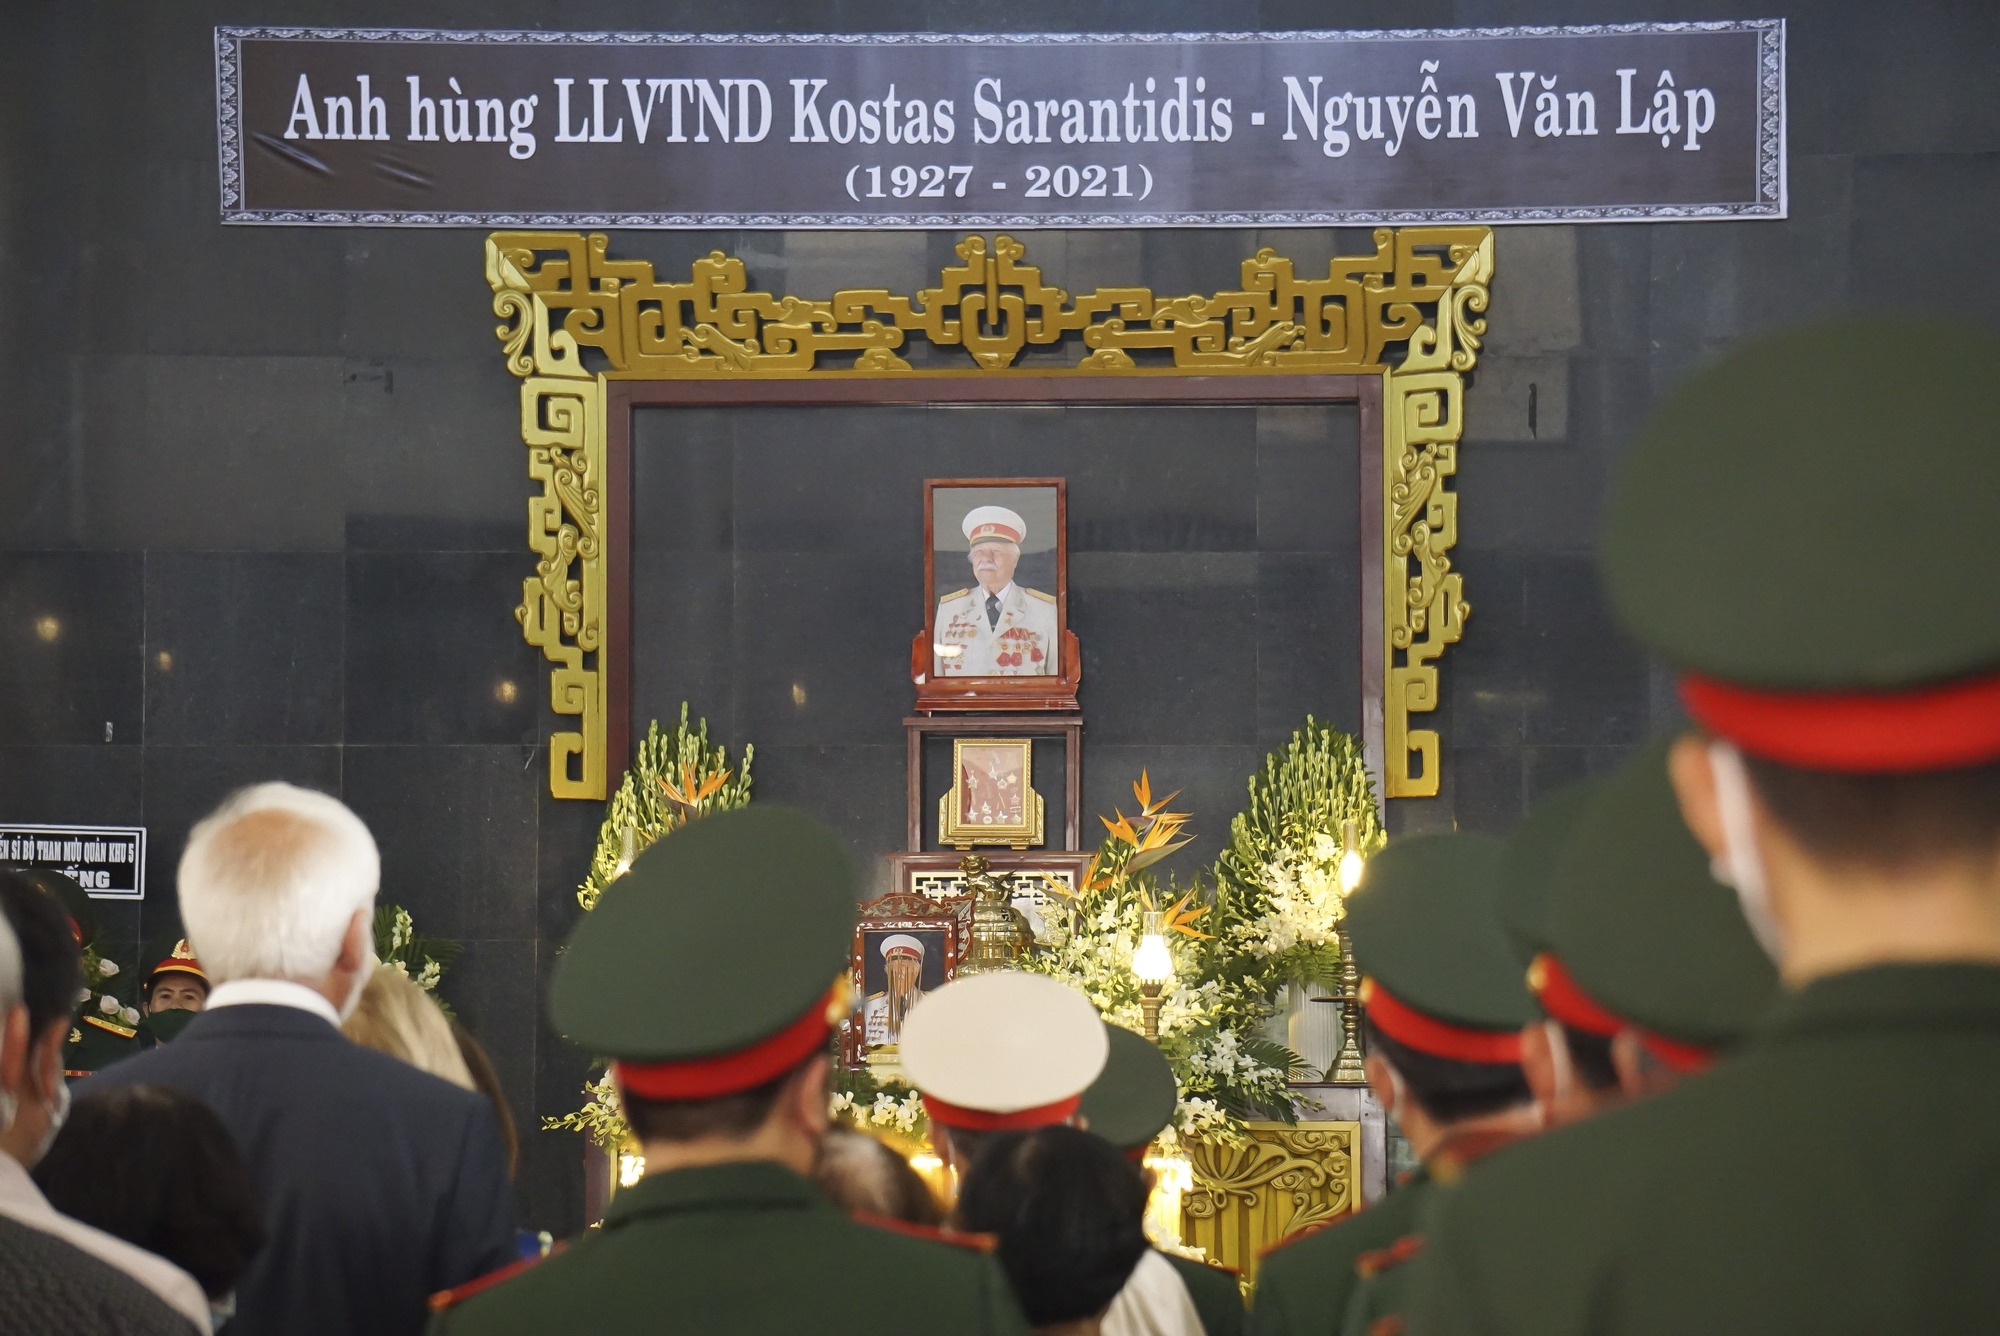 Xúc động lễ truy điệu Anh hùng LLVT nhân dân Kostas Sarantidis - Nguyễn Văn Lập - Ảnh 7.